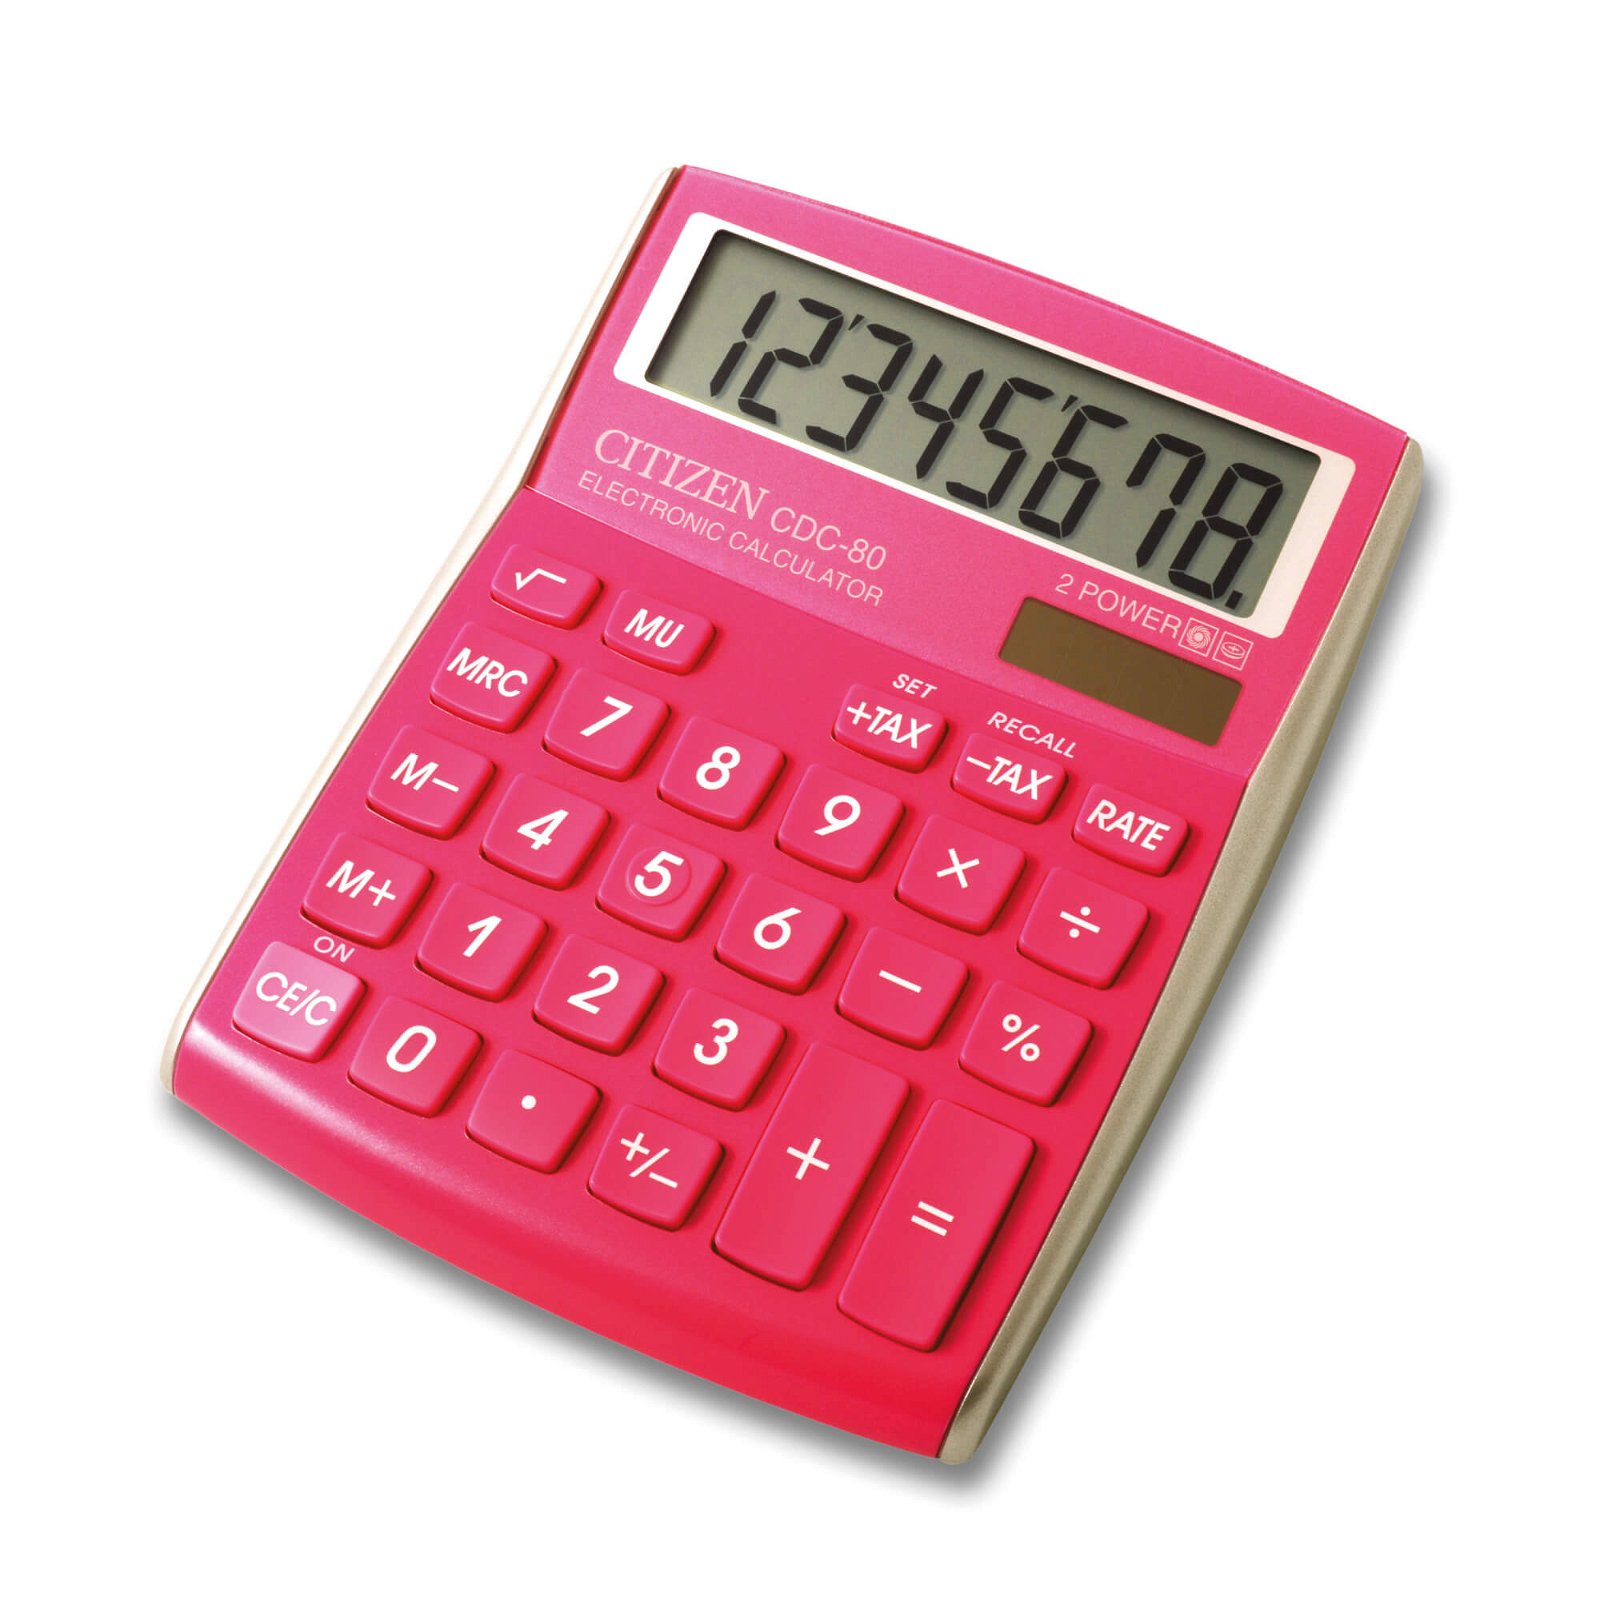 Tischrechner CDC 80PKWB, pink